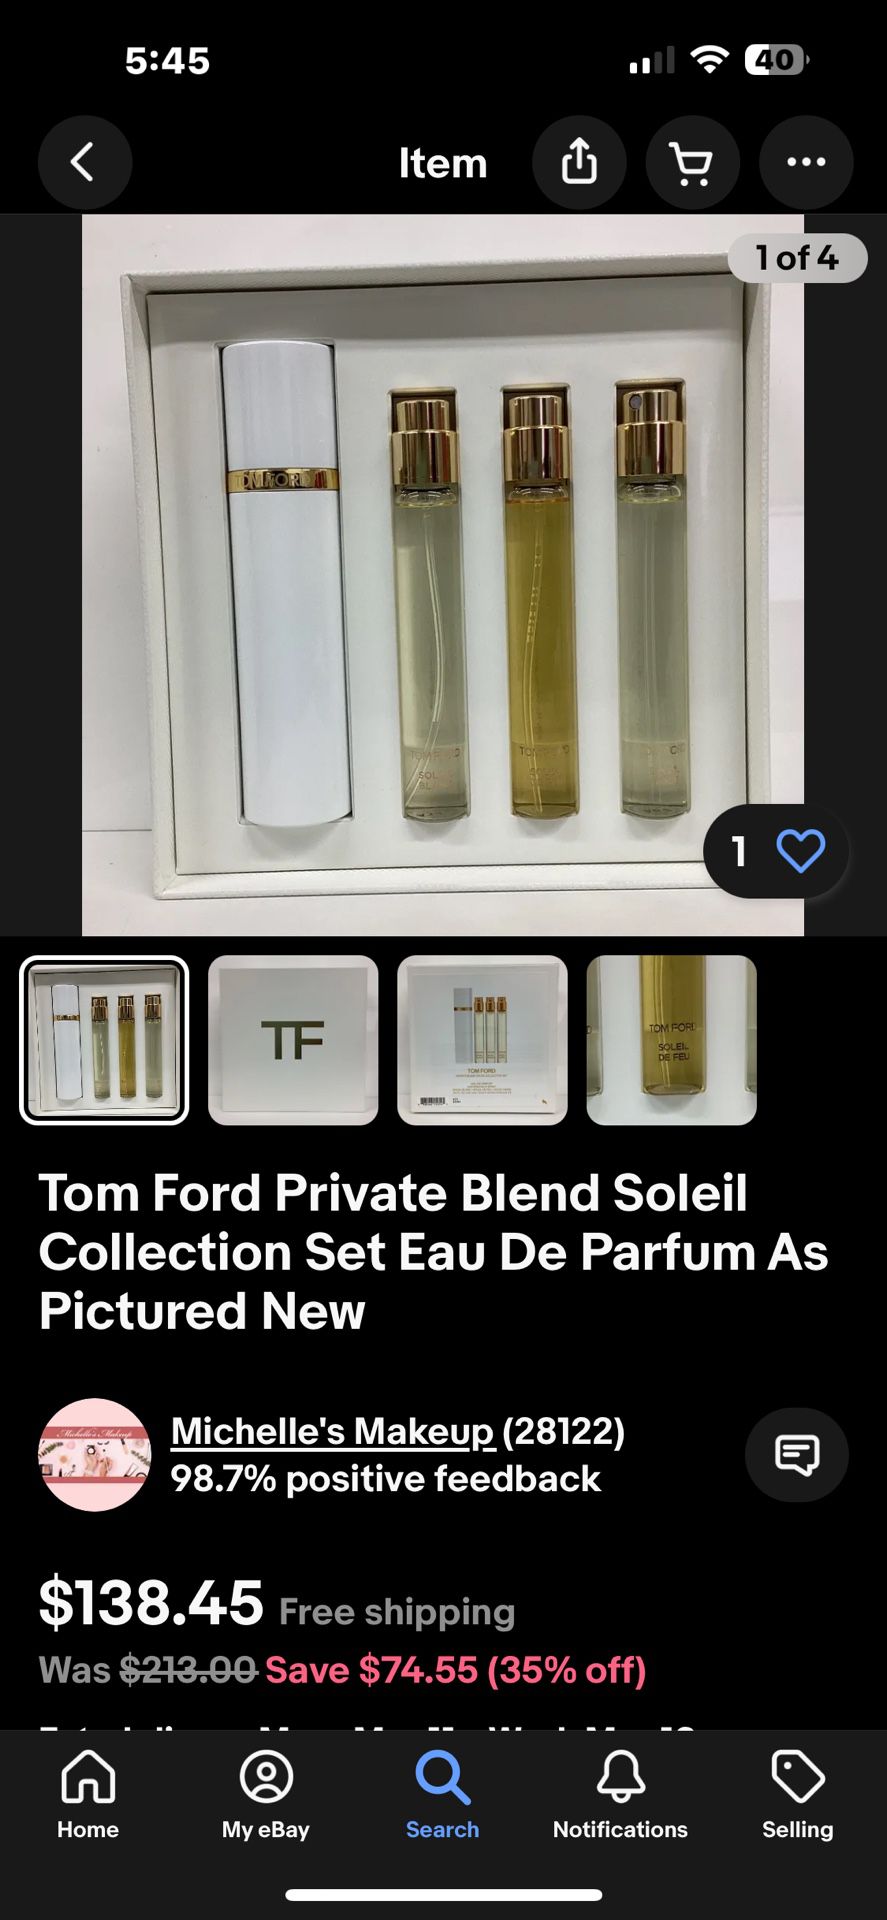 Tom Ford Perfume 